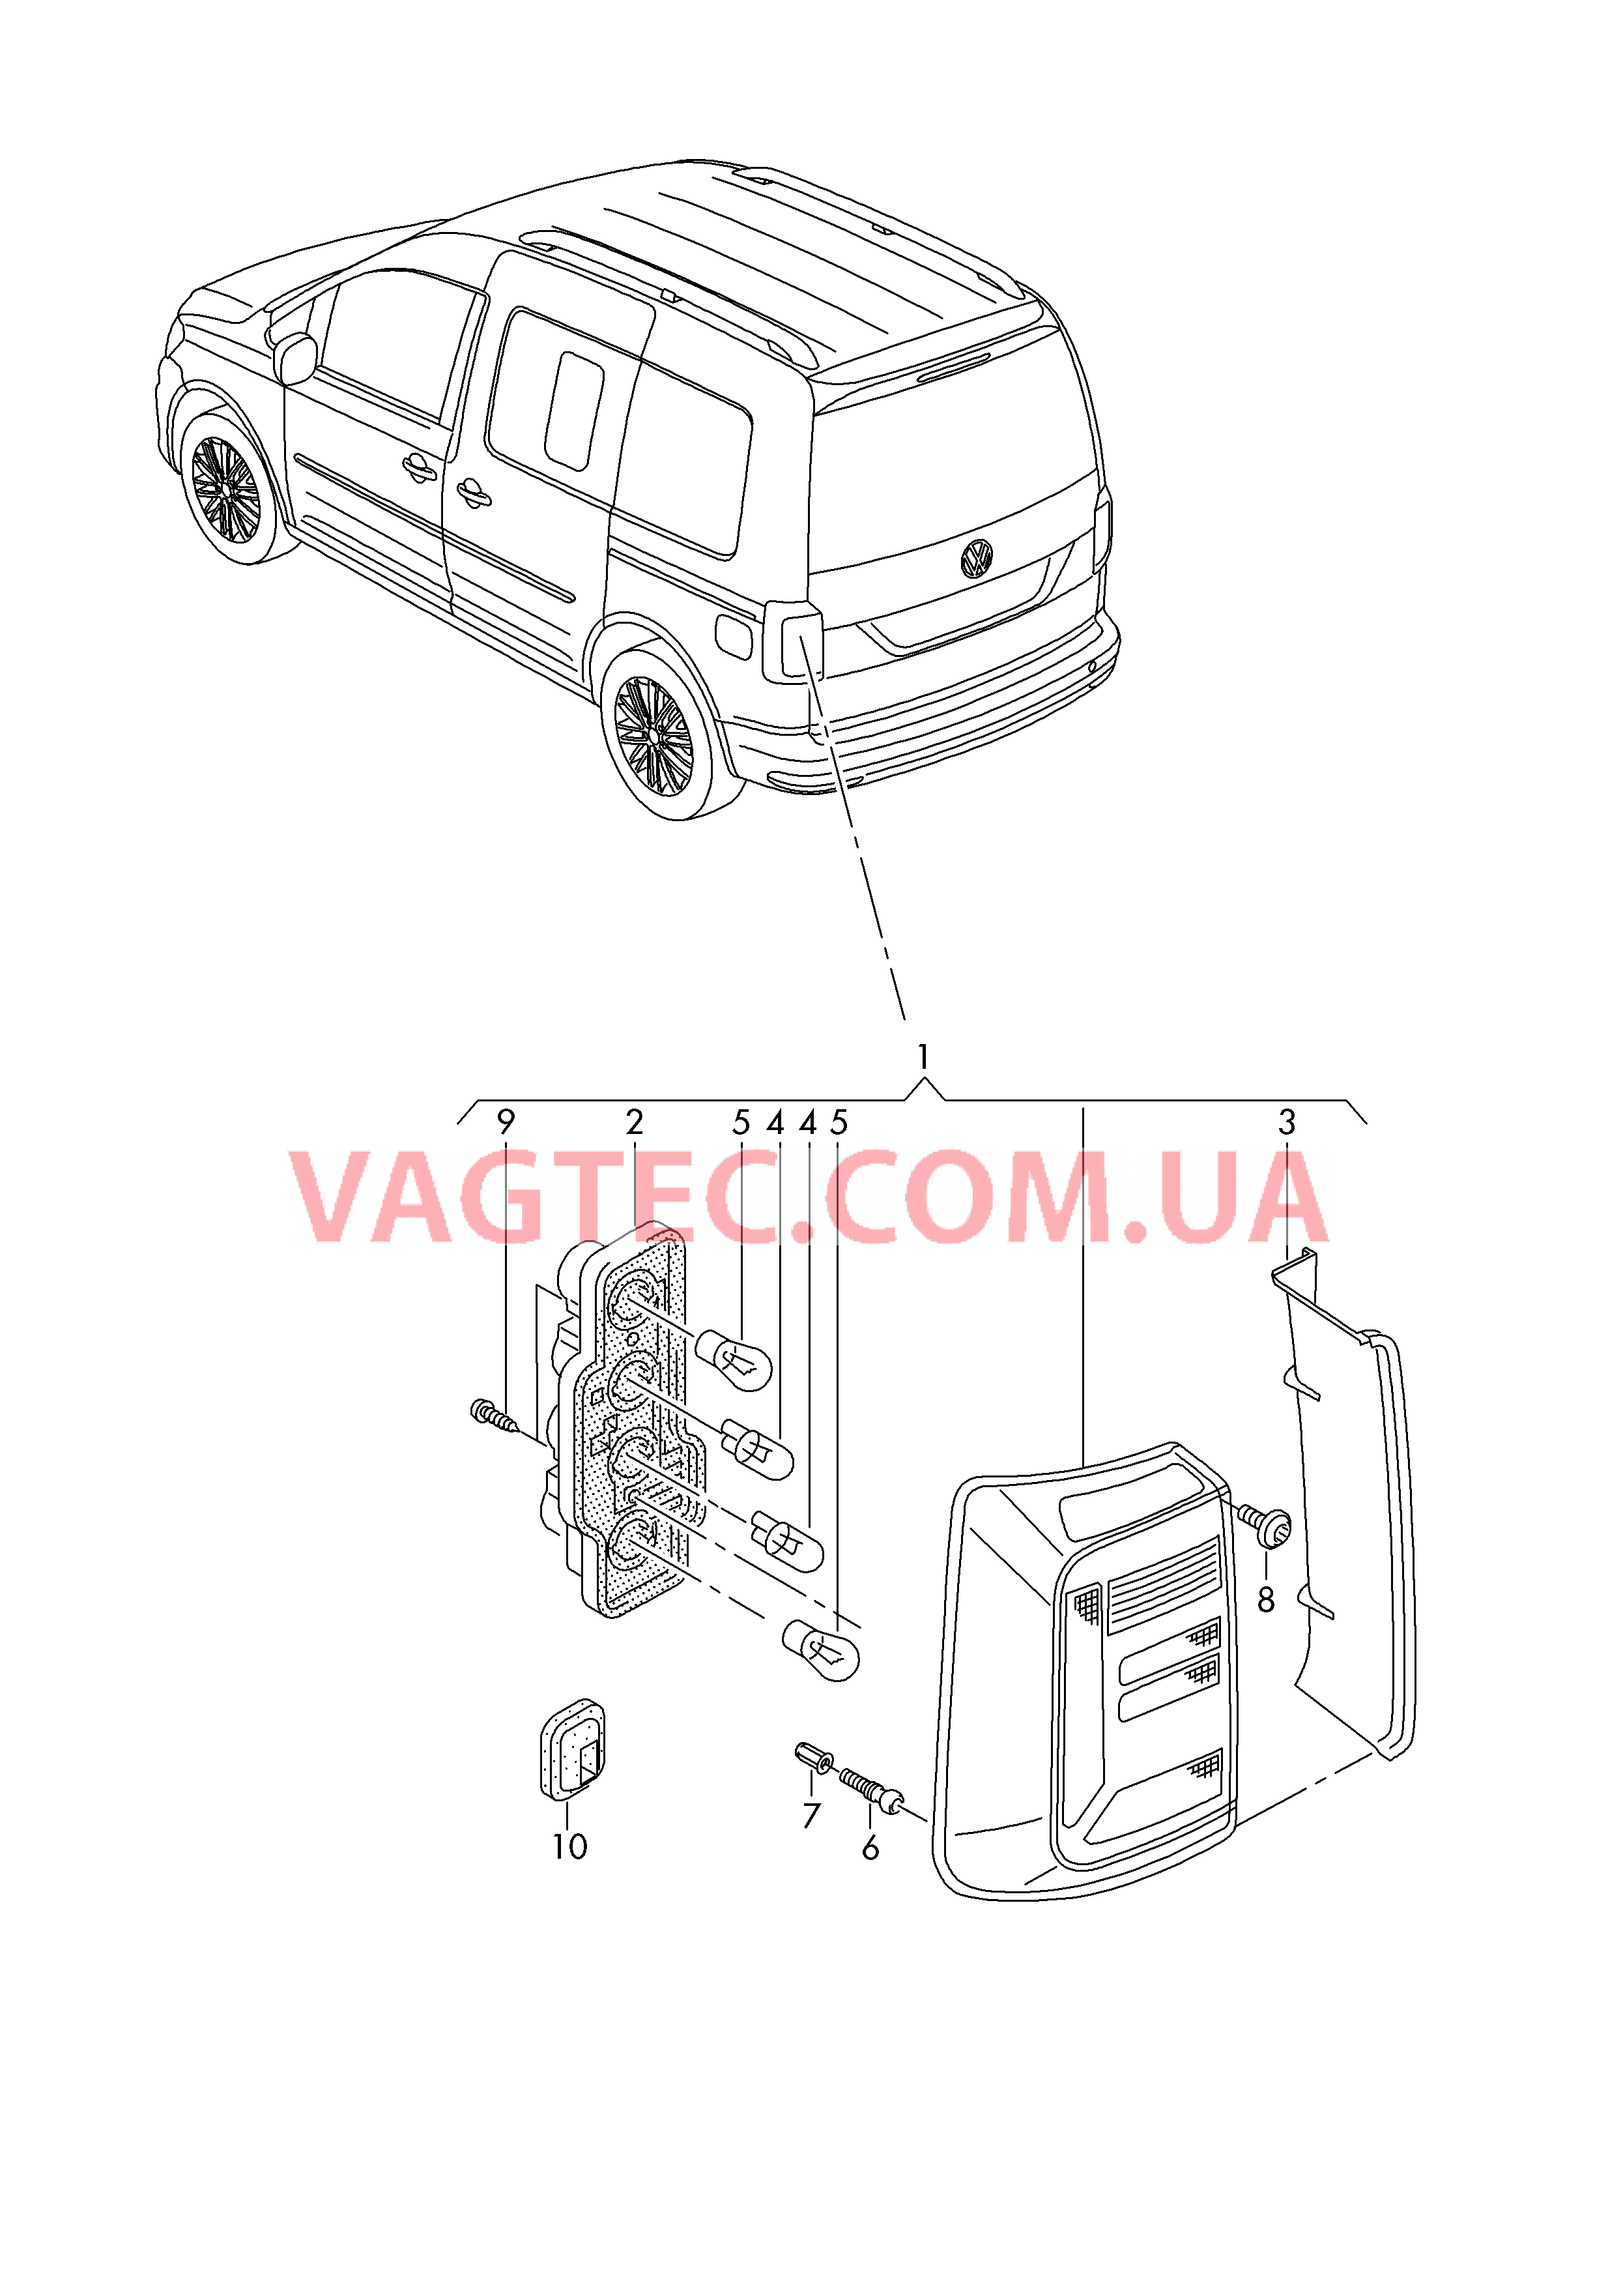 Задний фонарь для а/м с крышкой багажного отсека  для VOLKSWAGEN Caddy 2017